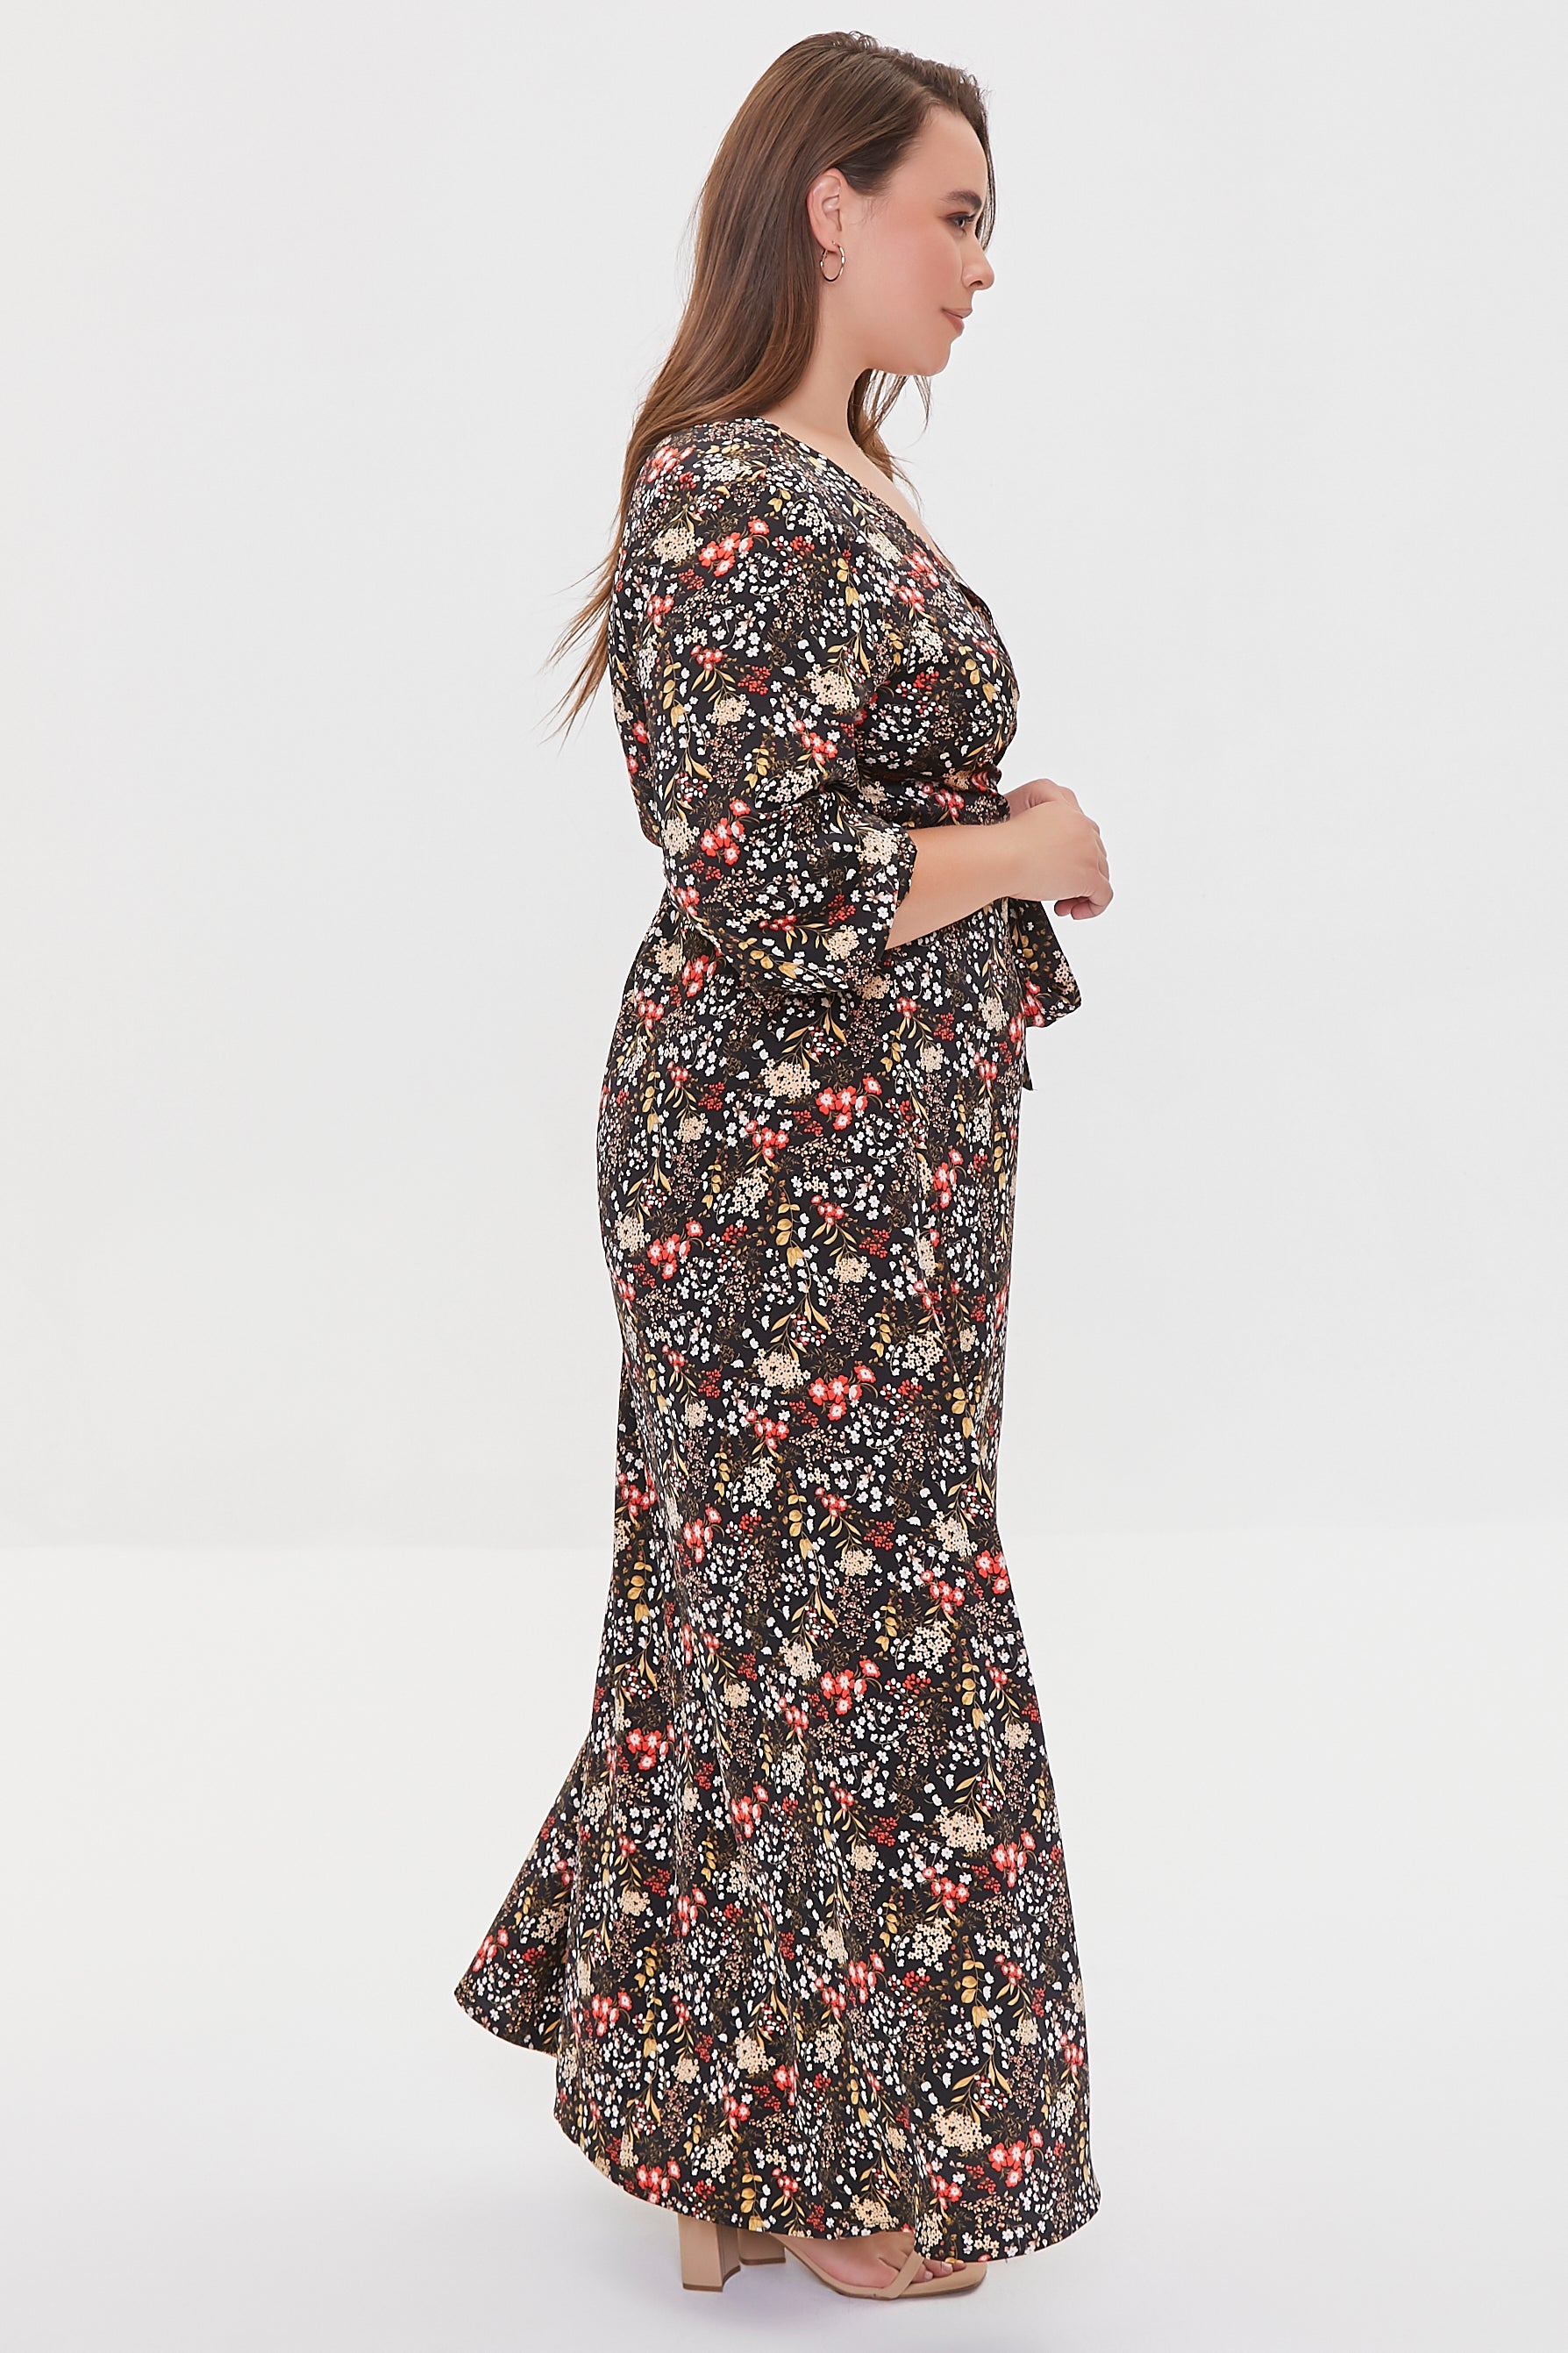 Blackmulti Plus Size Floral Print Maxi Dress 1